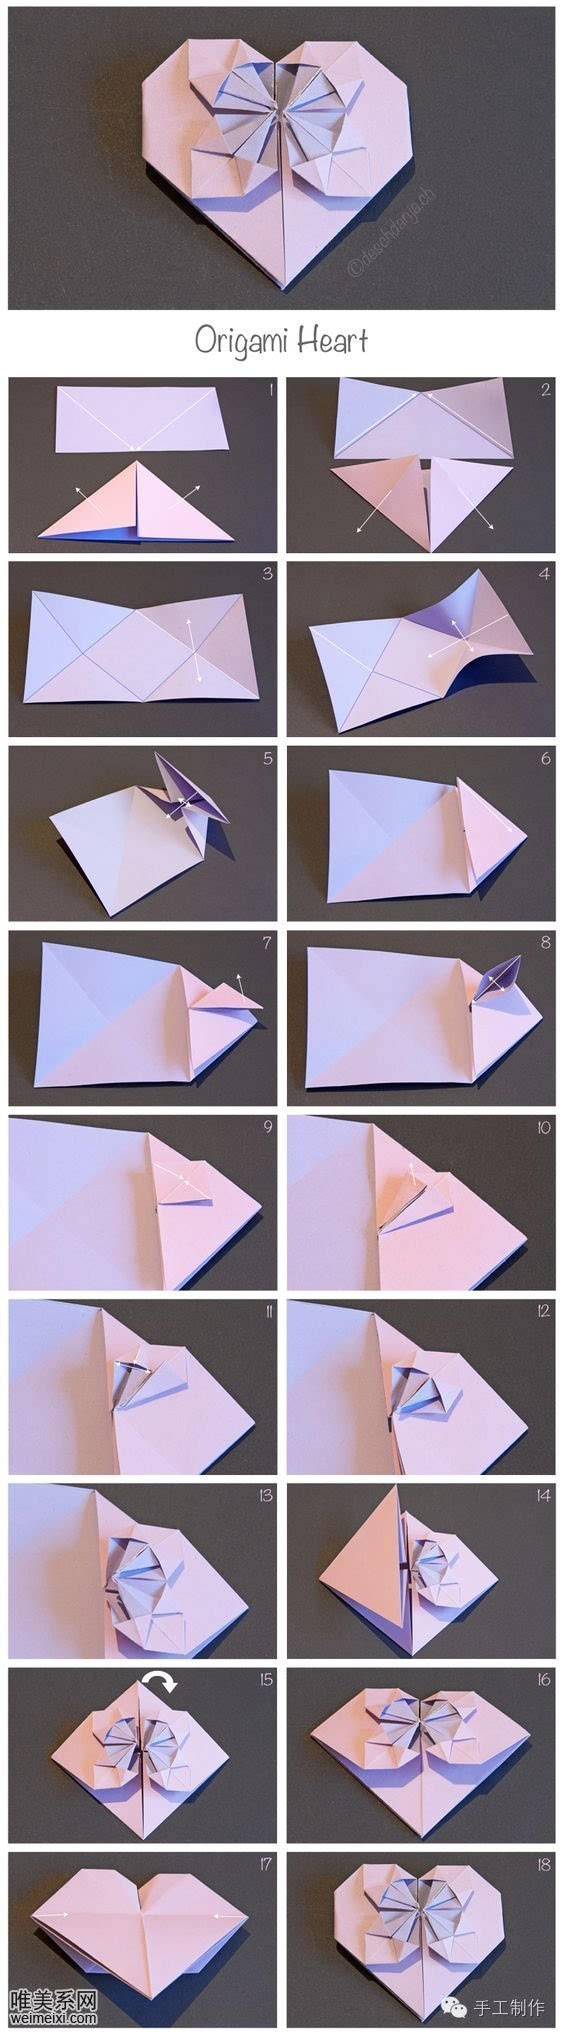 一个简单的心形折纸手工教程